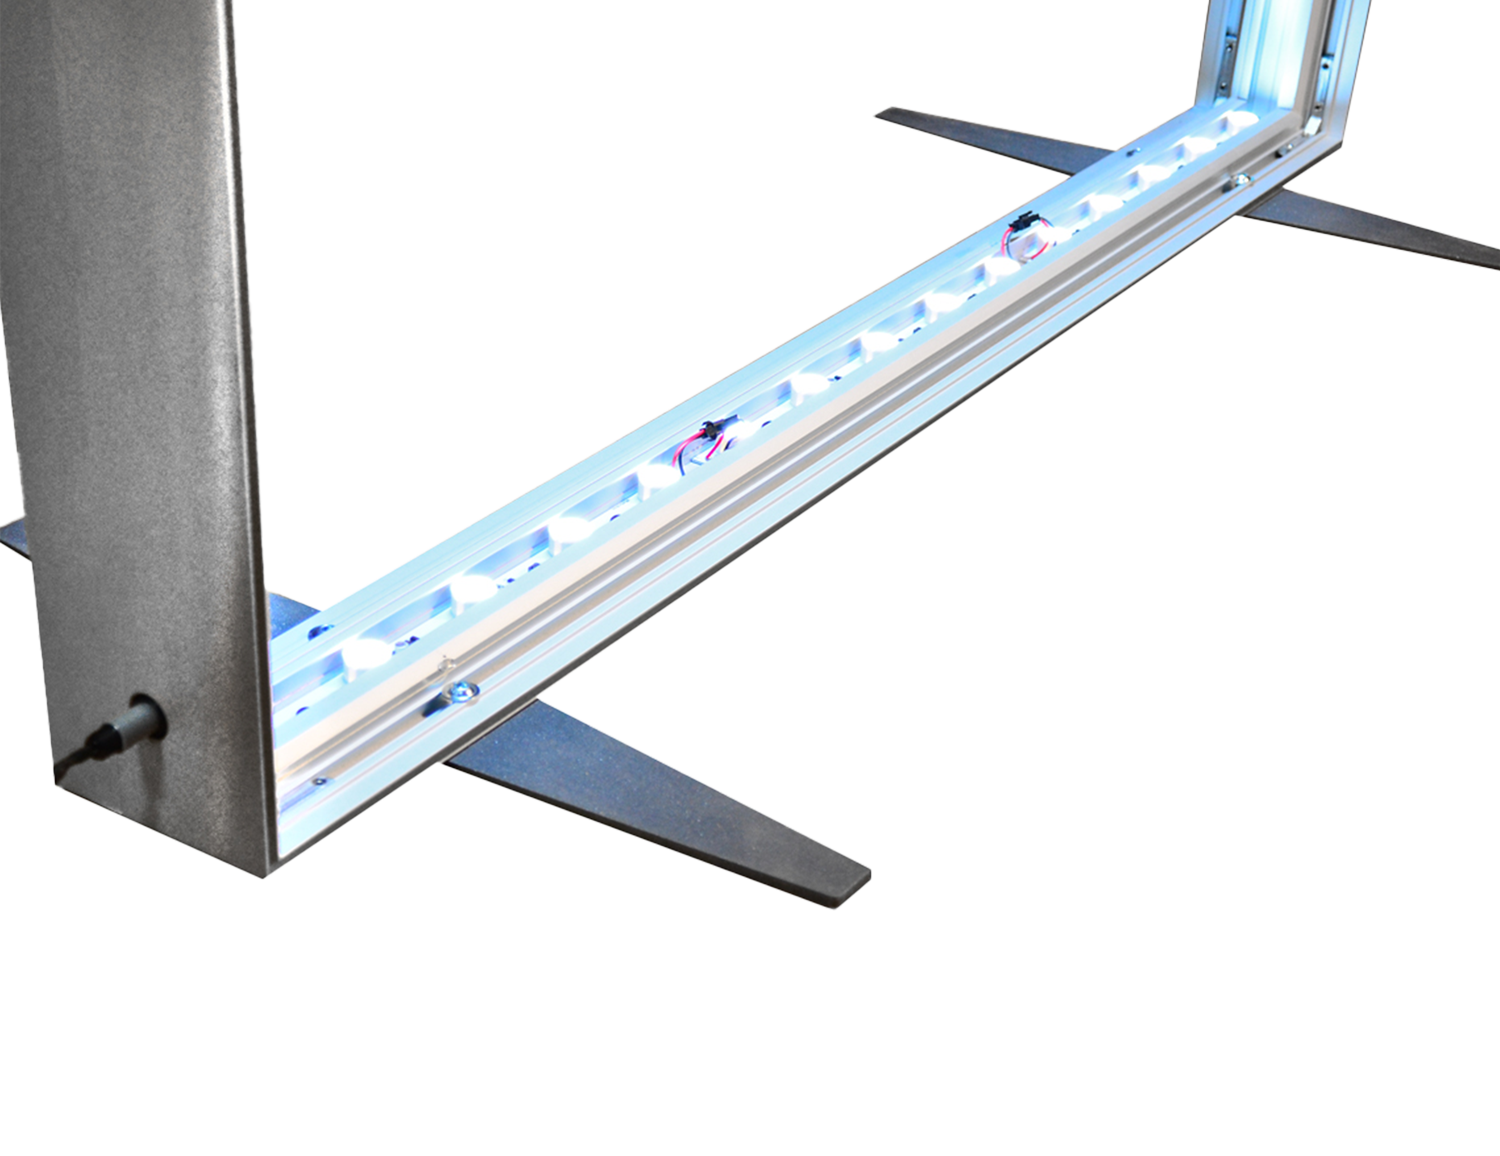 LED lights integrated in frames